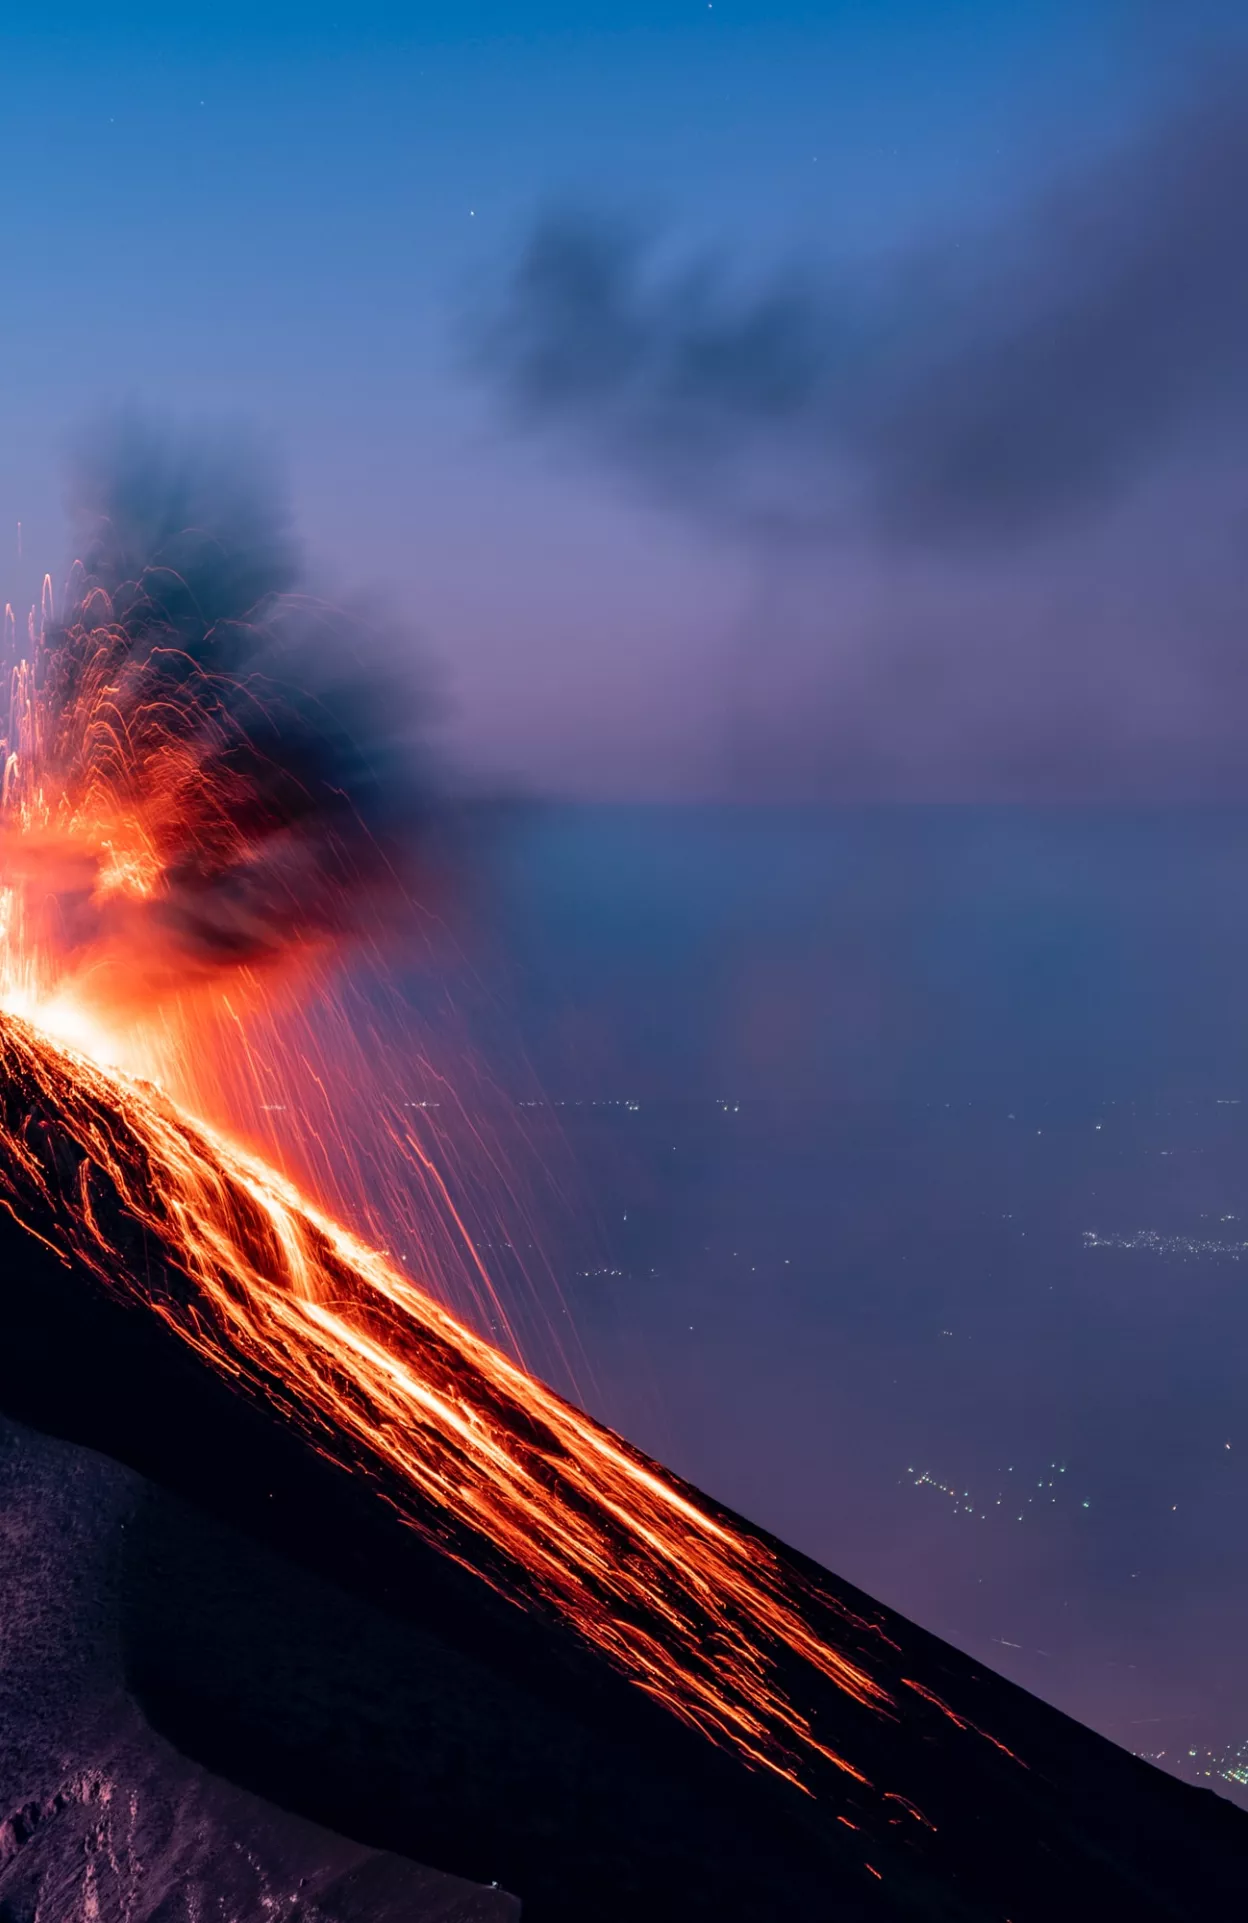 A volcano exploding